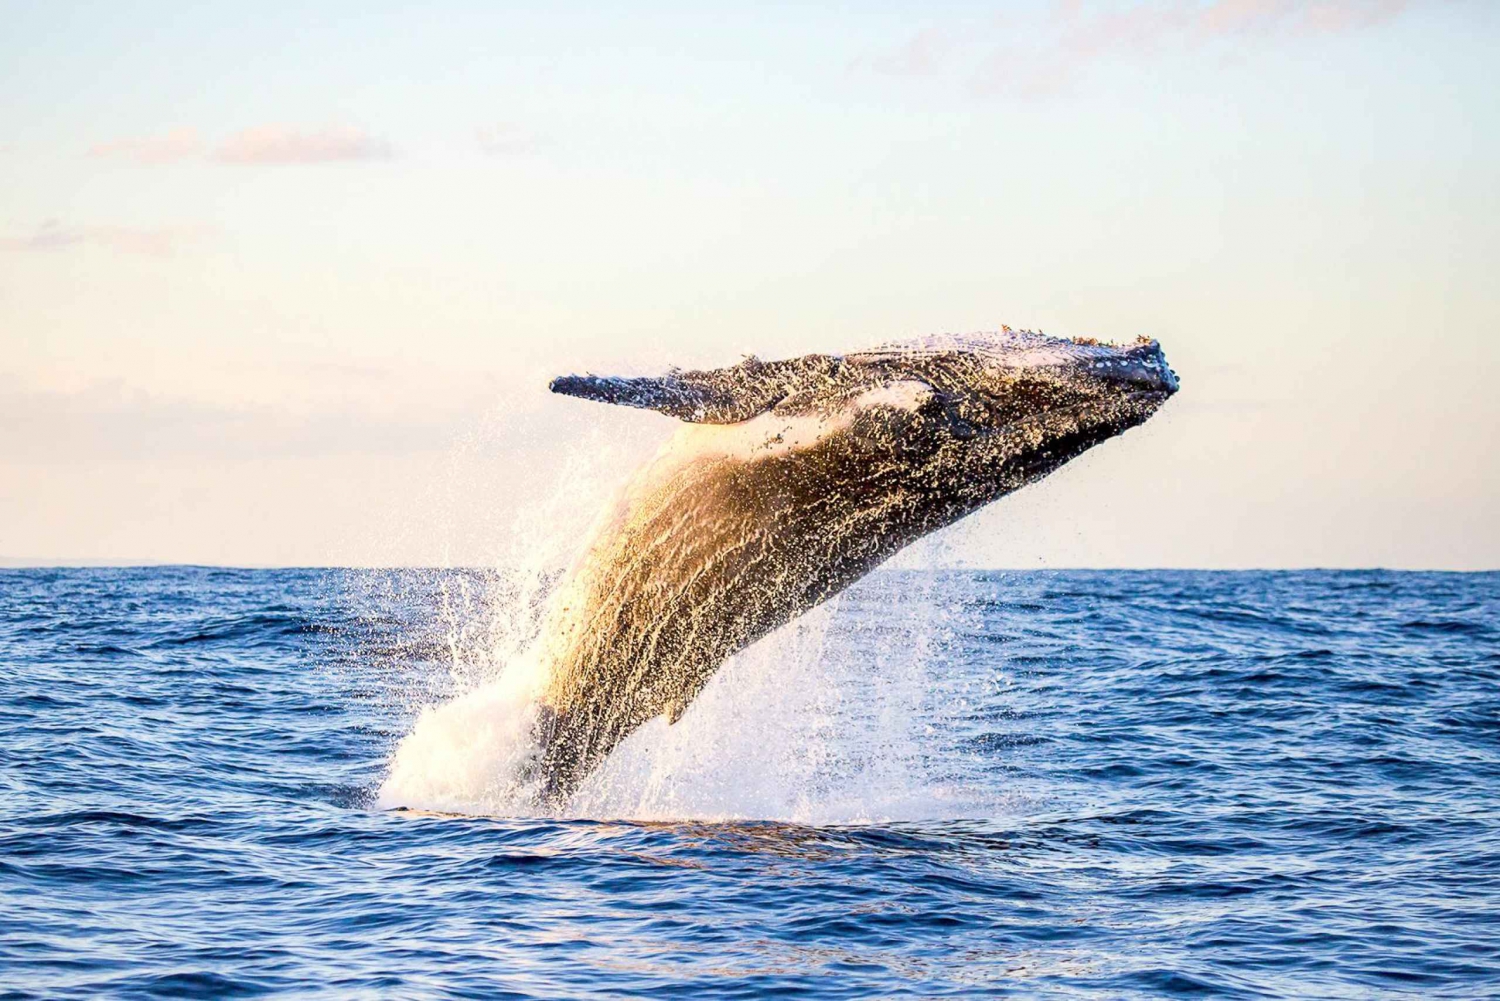 Oahu: Poranny ekologiczny rejs z obserwacją wielorybów w Waikiki